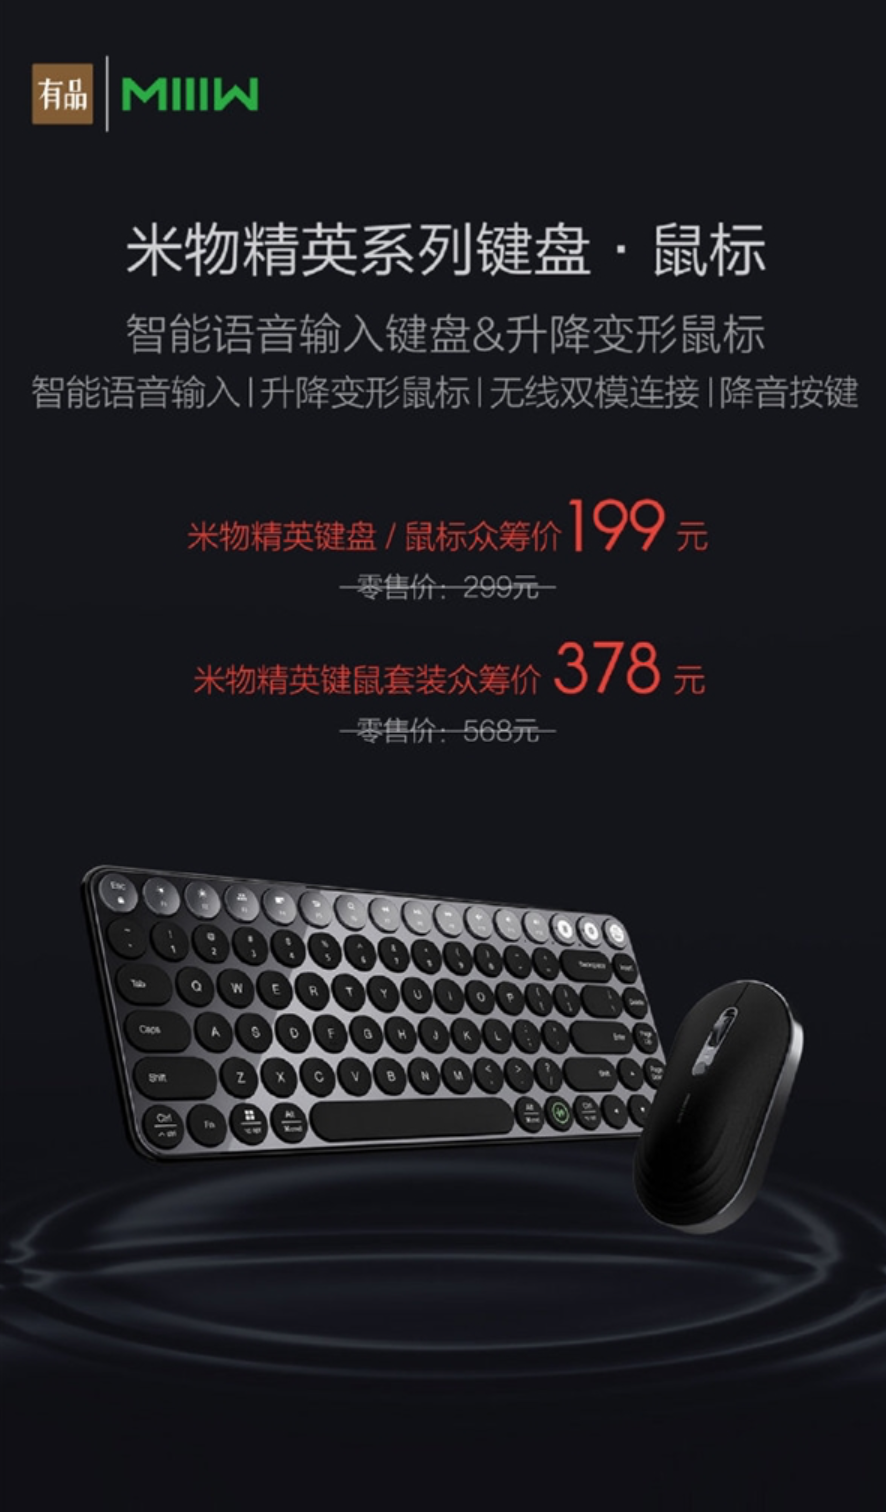 Klávesnica Xiaomi MIIW Elite a myš MIIW Elite boli uvedené na trh 25. februára 14